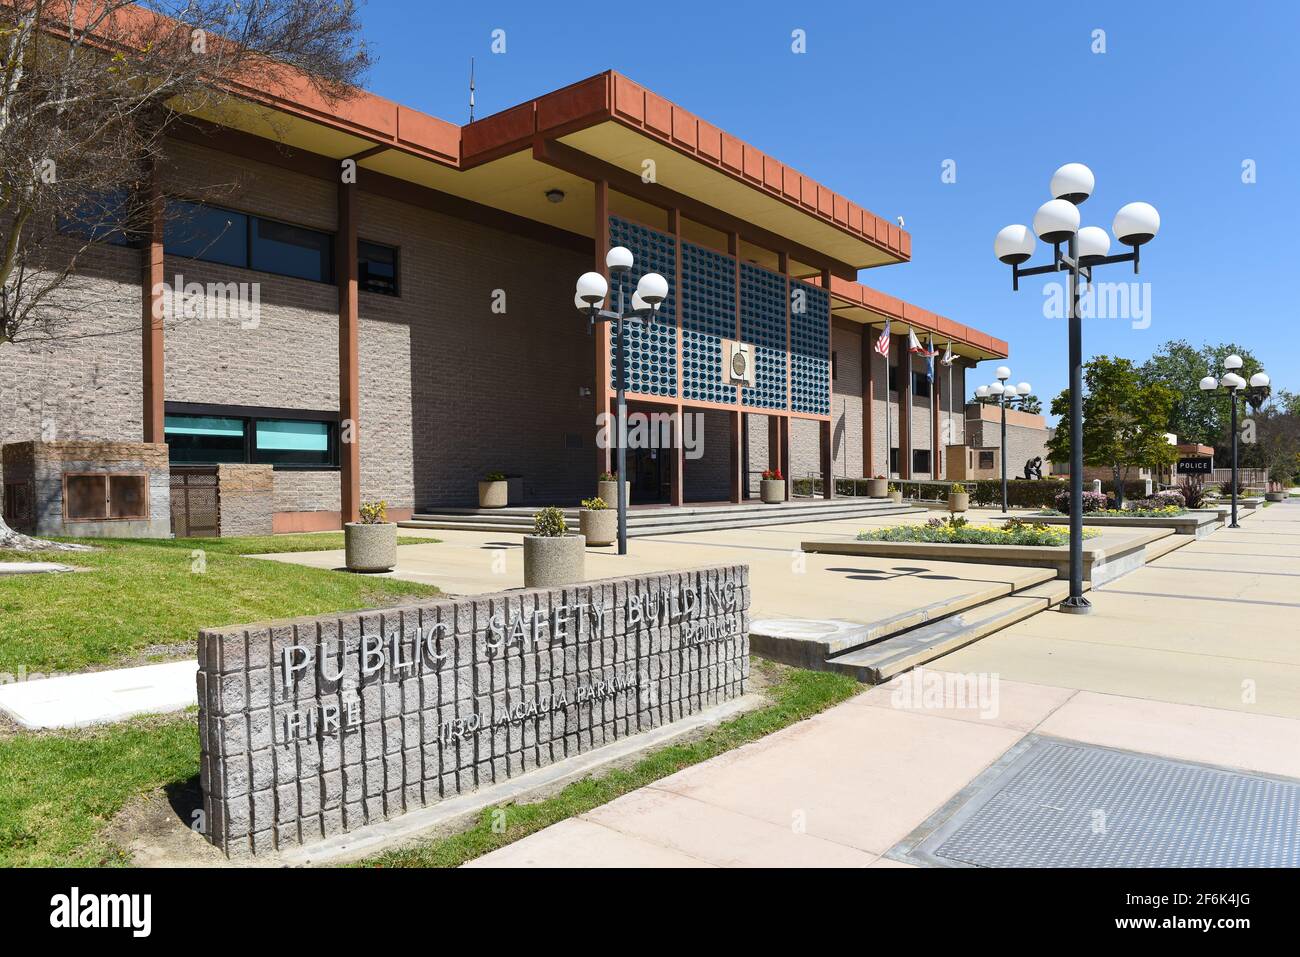 GARDEN GROVE, CALIFORNIA - 31 MAR 2021: Cartello di pubblica sicurezza presso il Garden Grove Police Department Building. Foto Stock